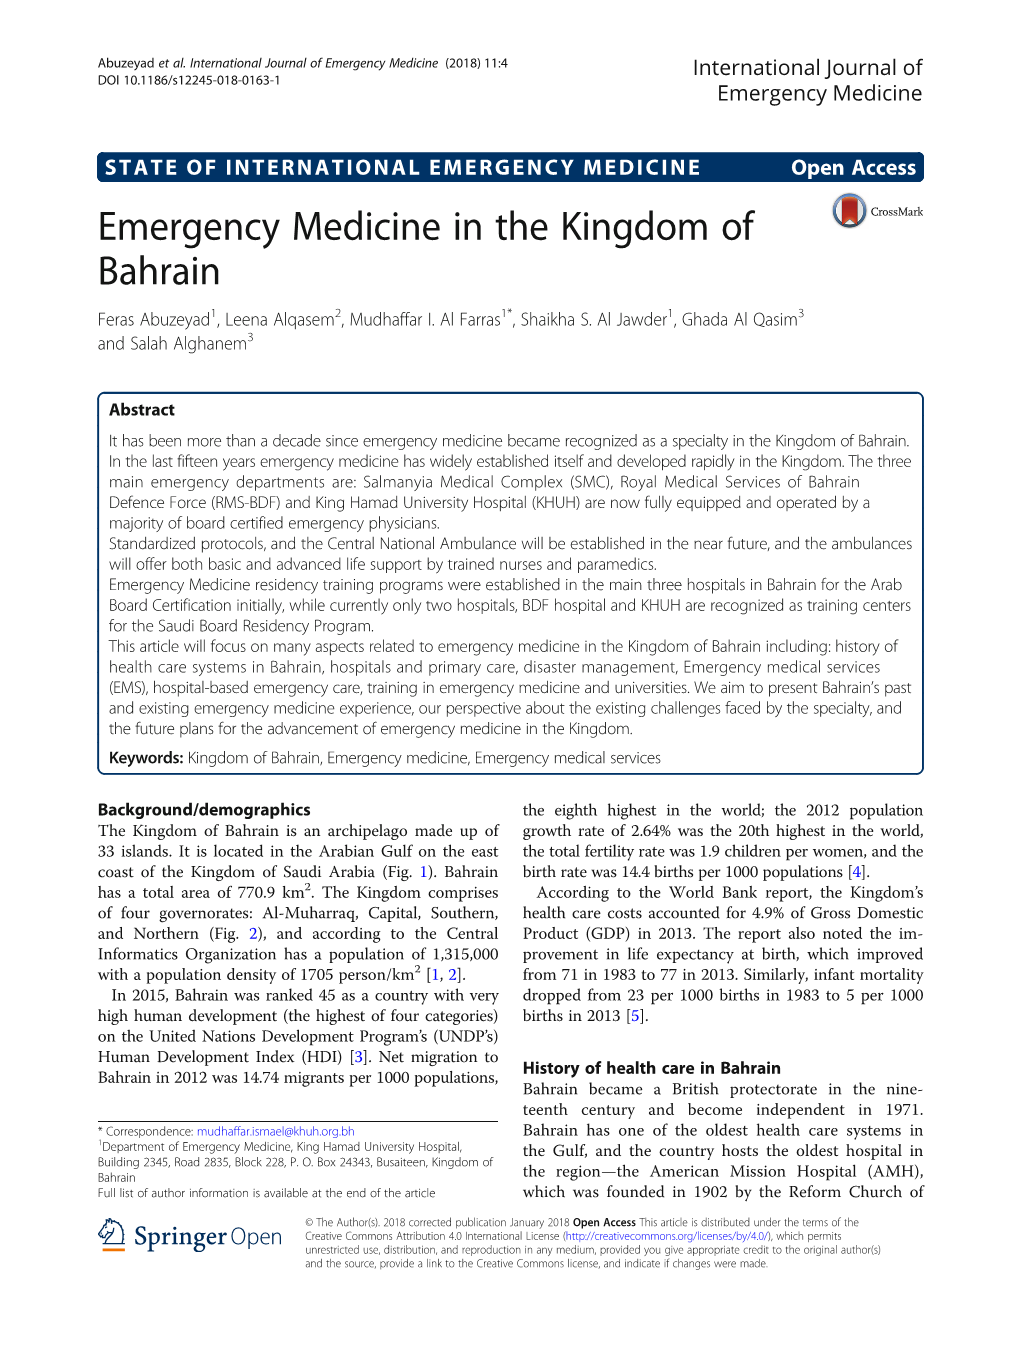 Emergency Medicine in the Kingdom of Bahrain Feras Abuzeyad1, Leena Alqasem2, Mudhaffar I